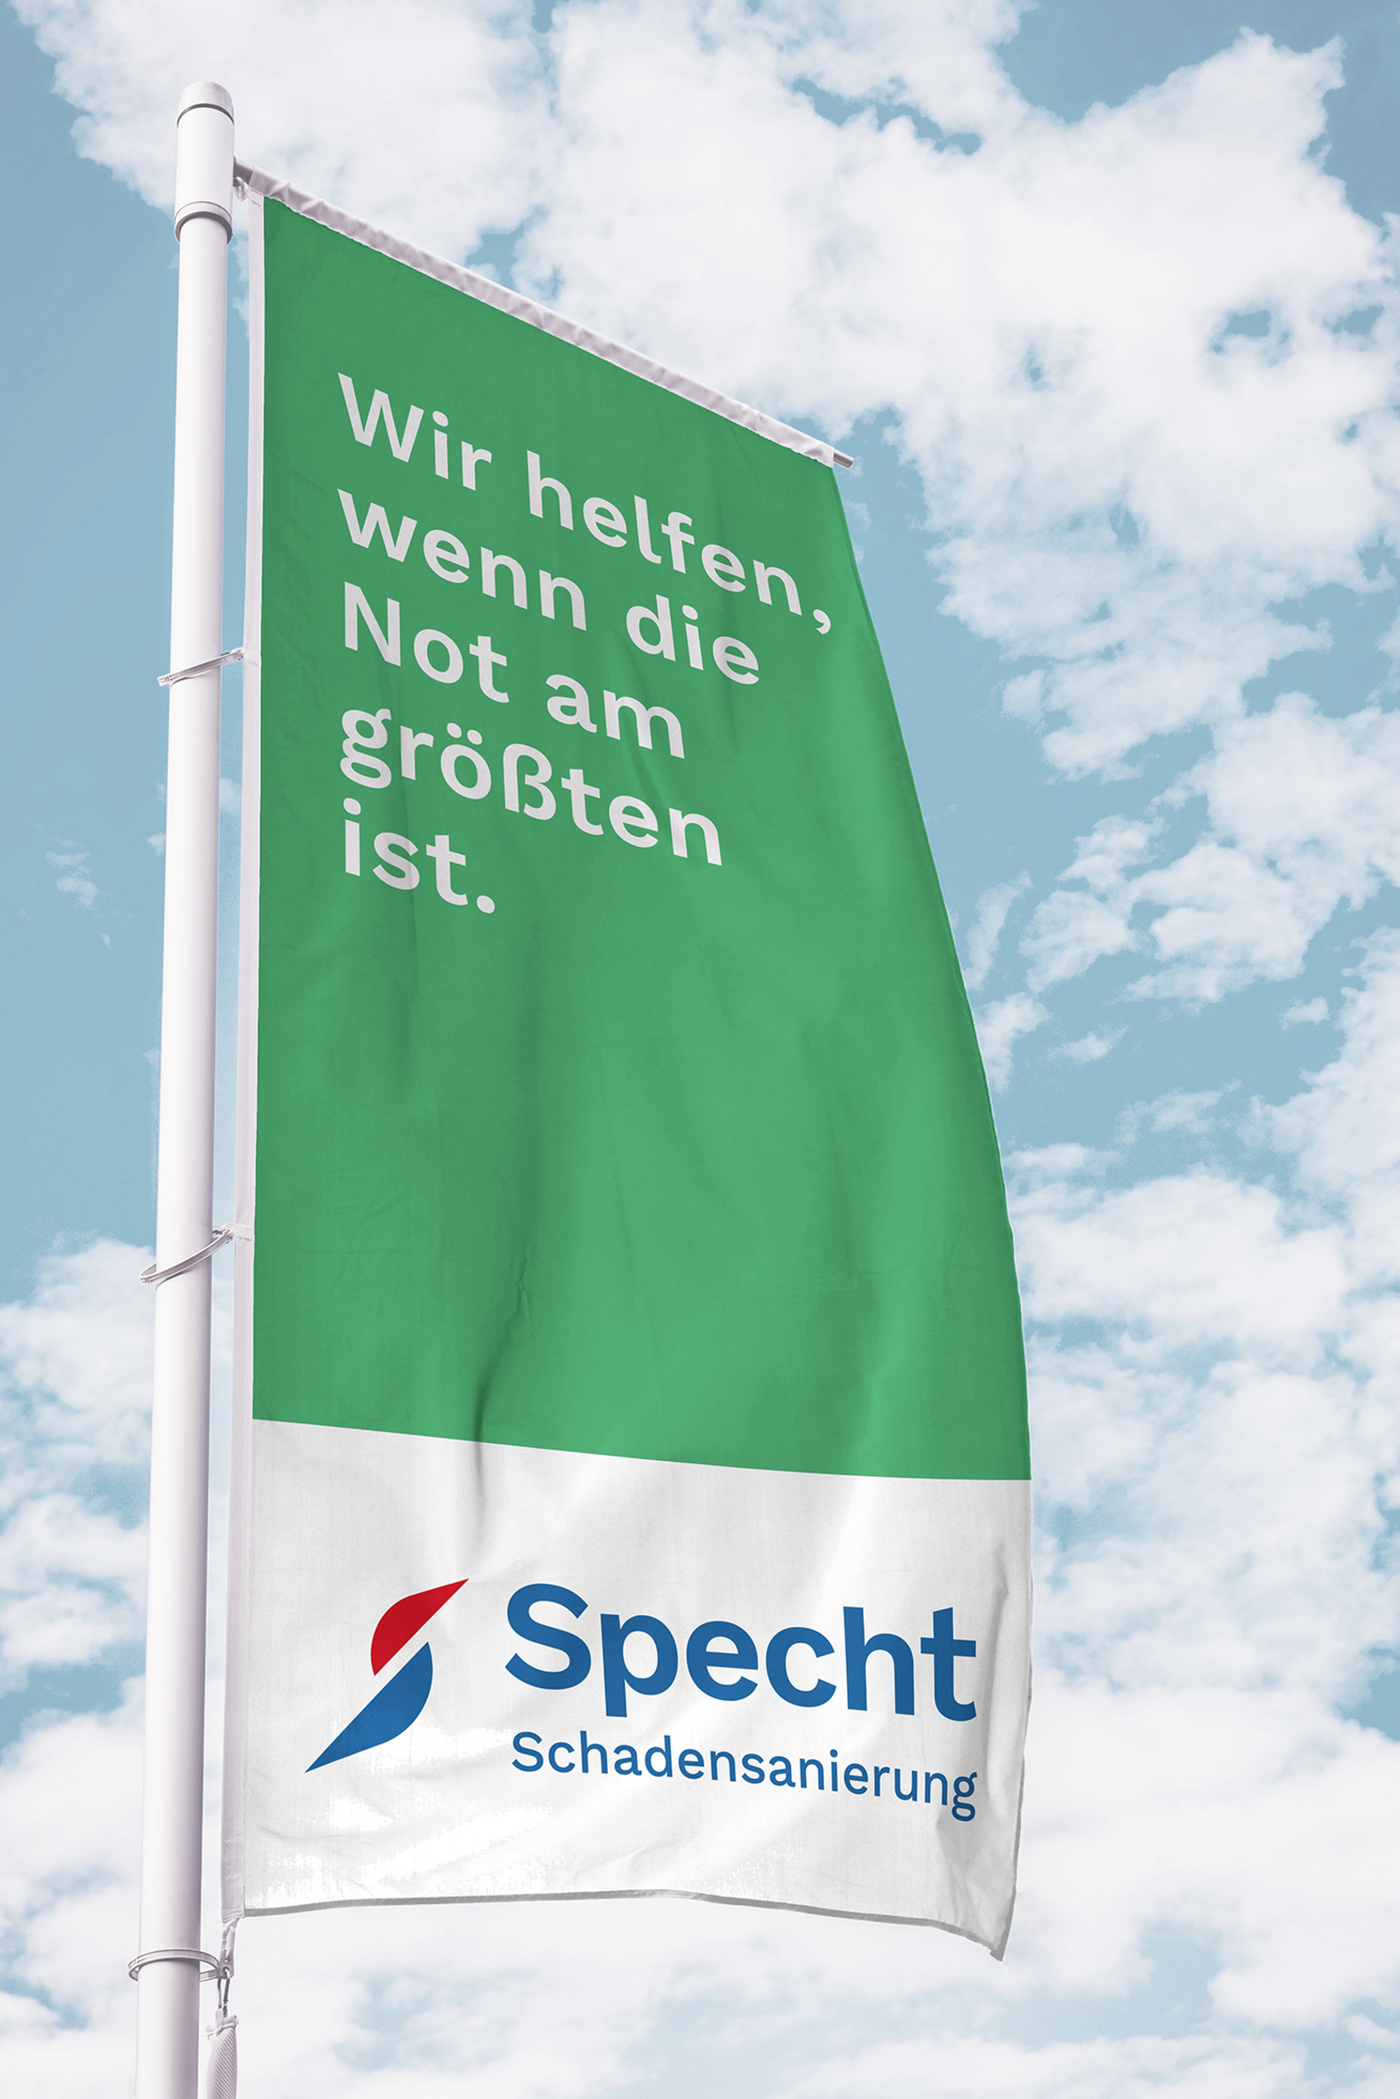 Eine grüne Flagge vor blauem Himmel mit dem Claim der Firma Specht GmbH: "Alles wird gut."